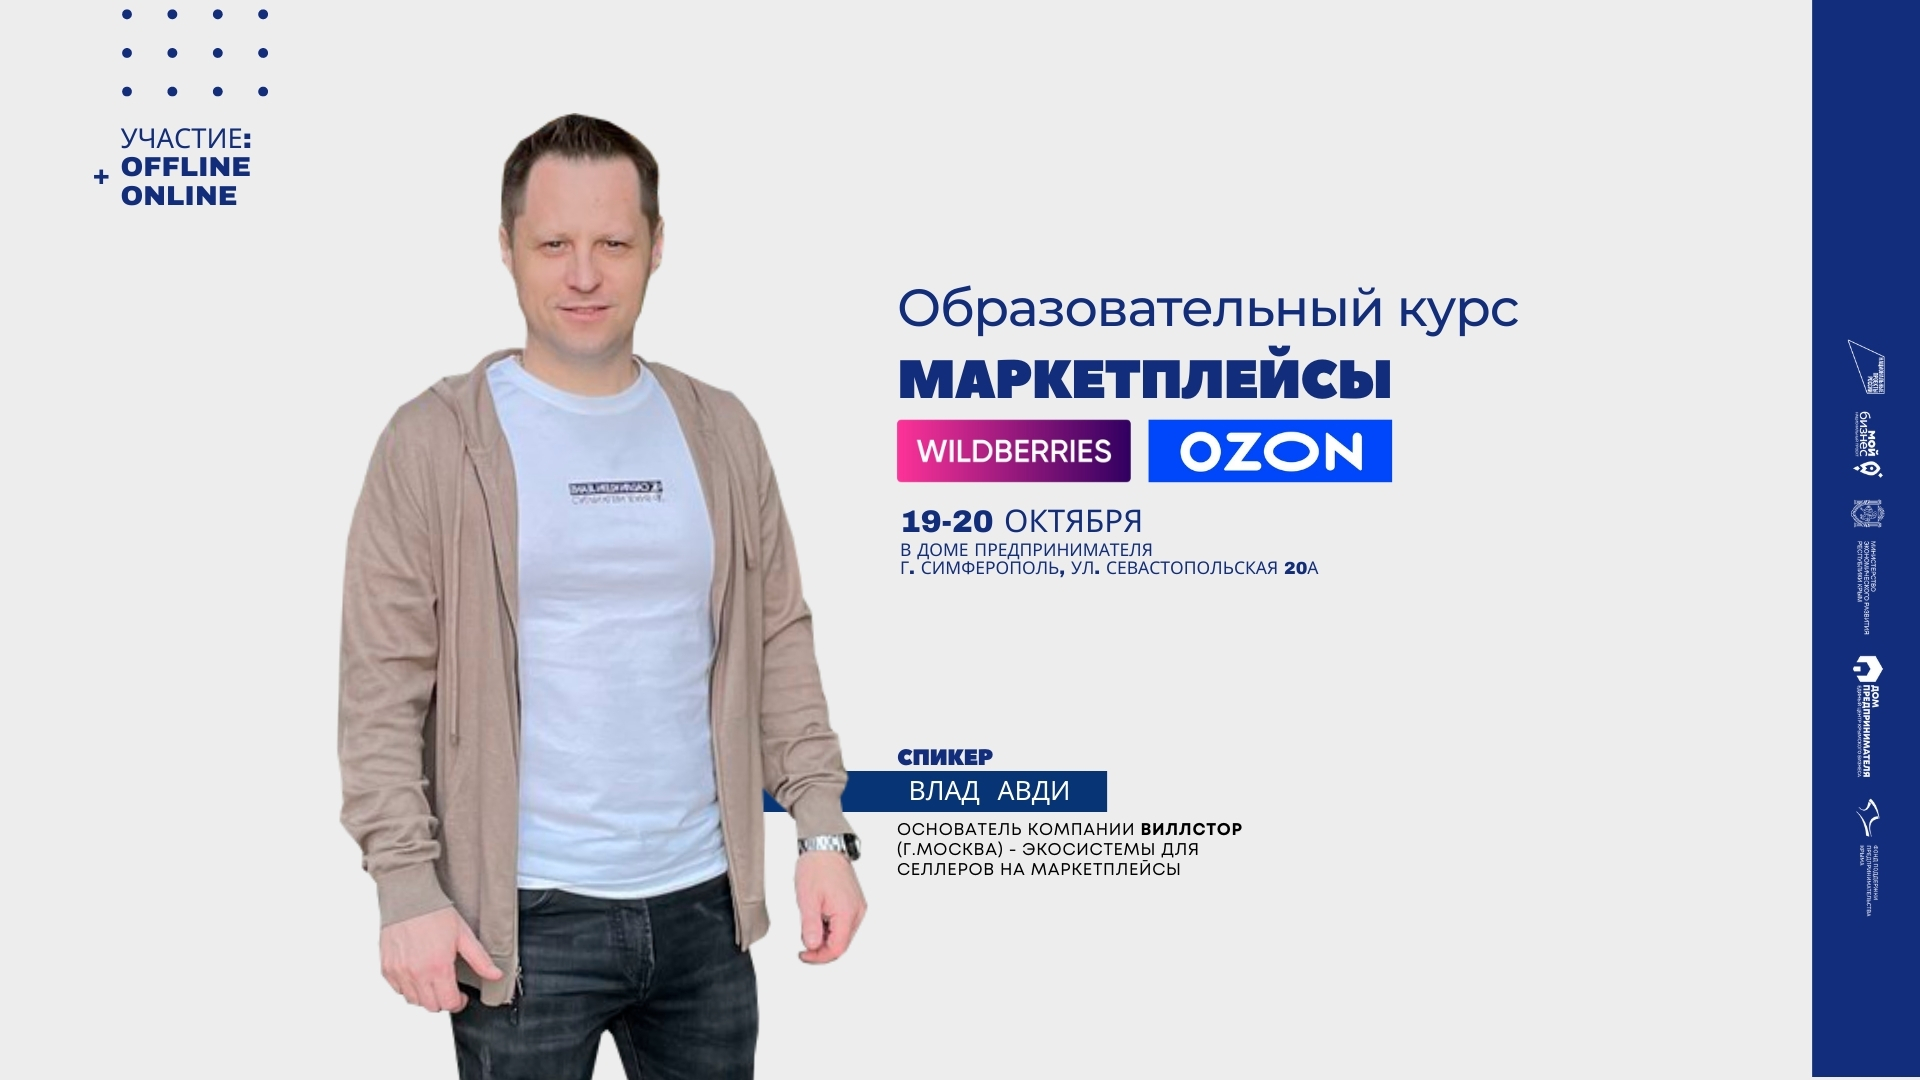 Образовательный курс для предпринимателей Крыма «Маркетплейсы»